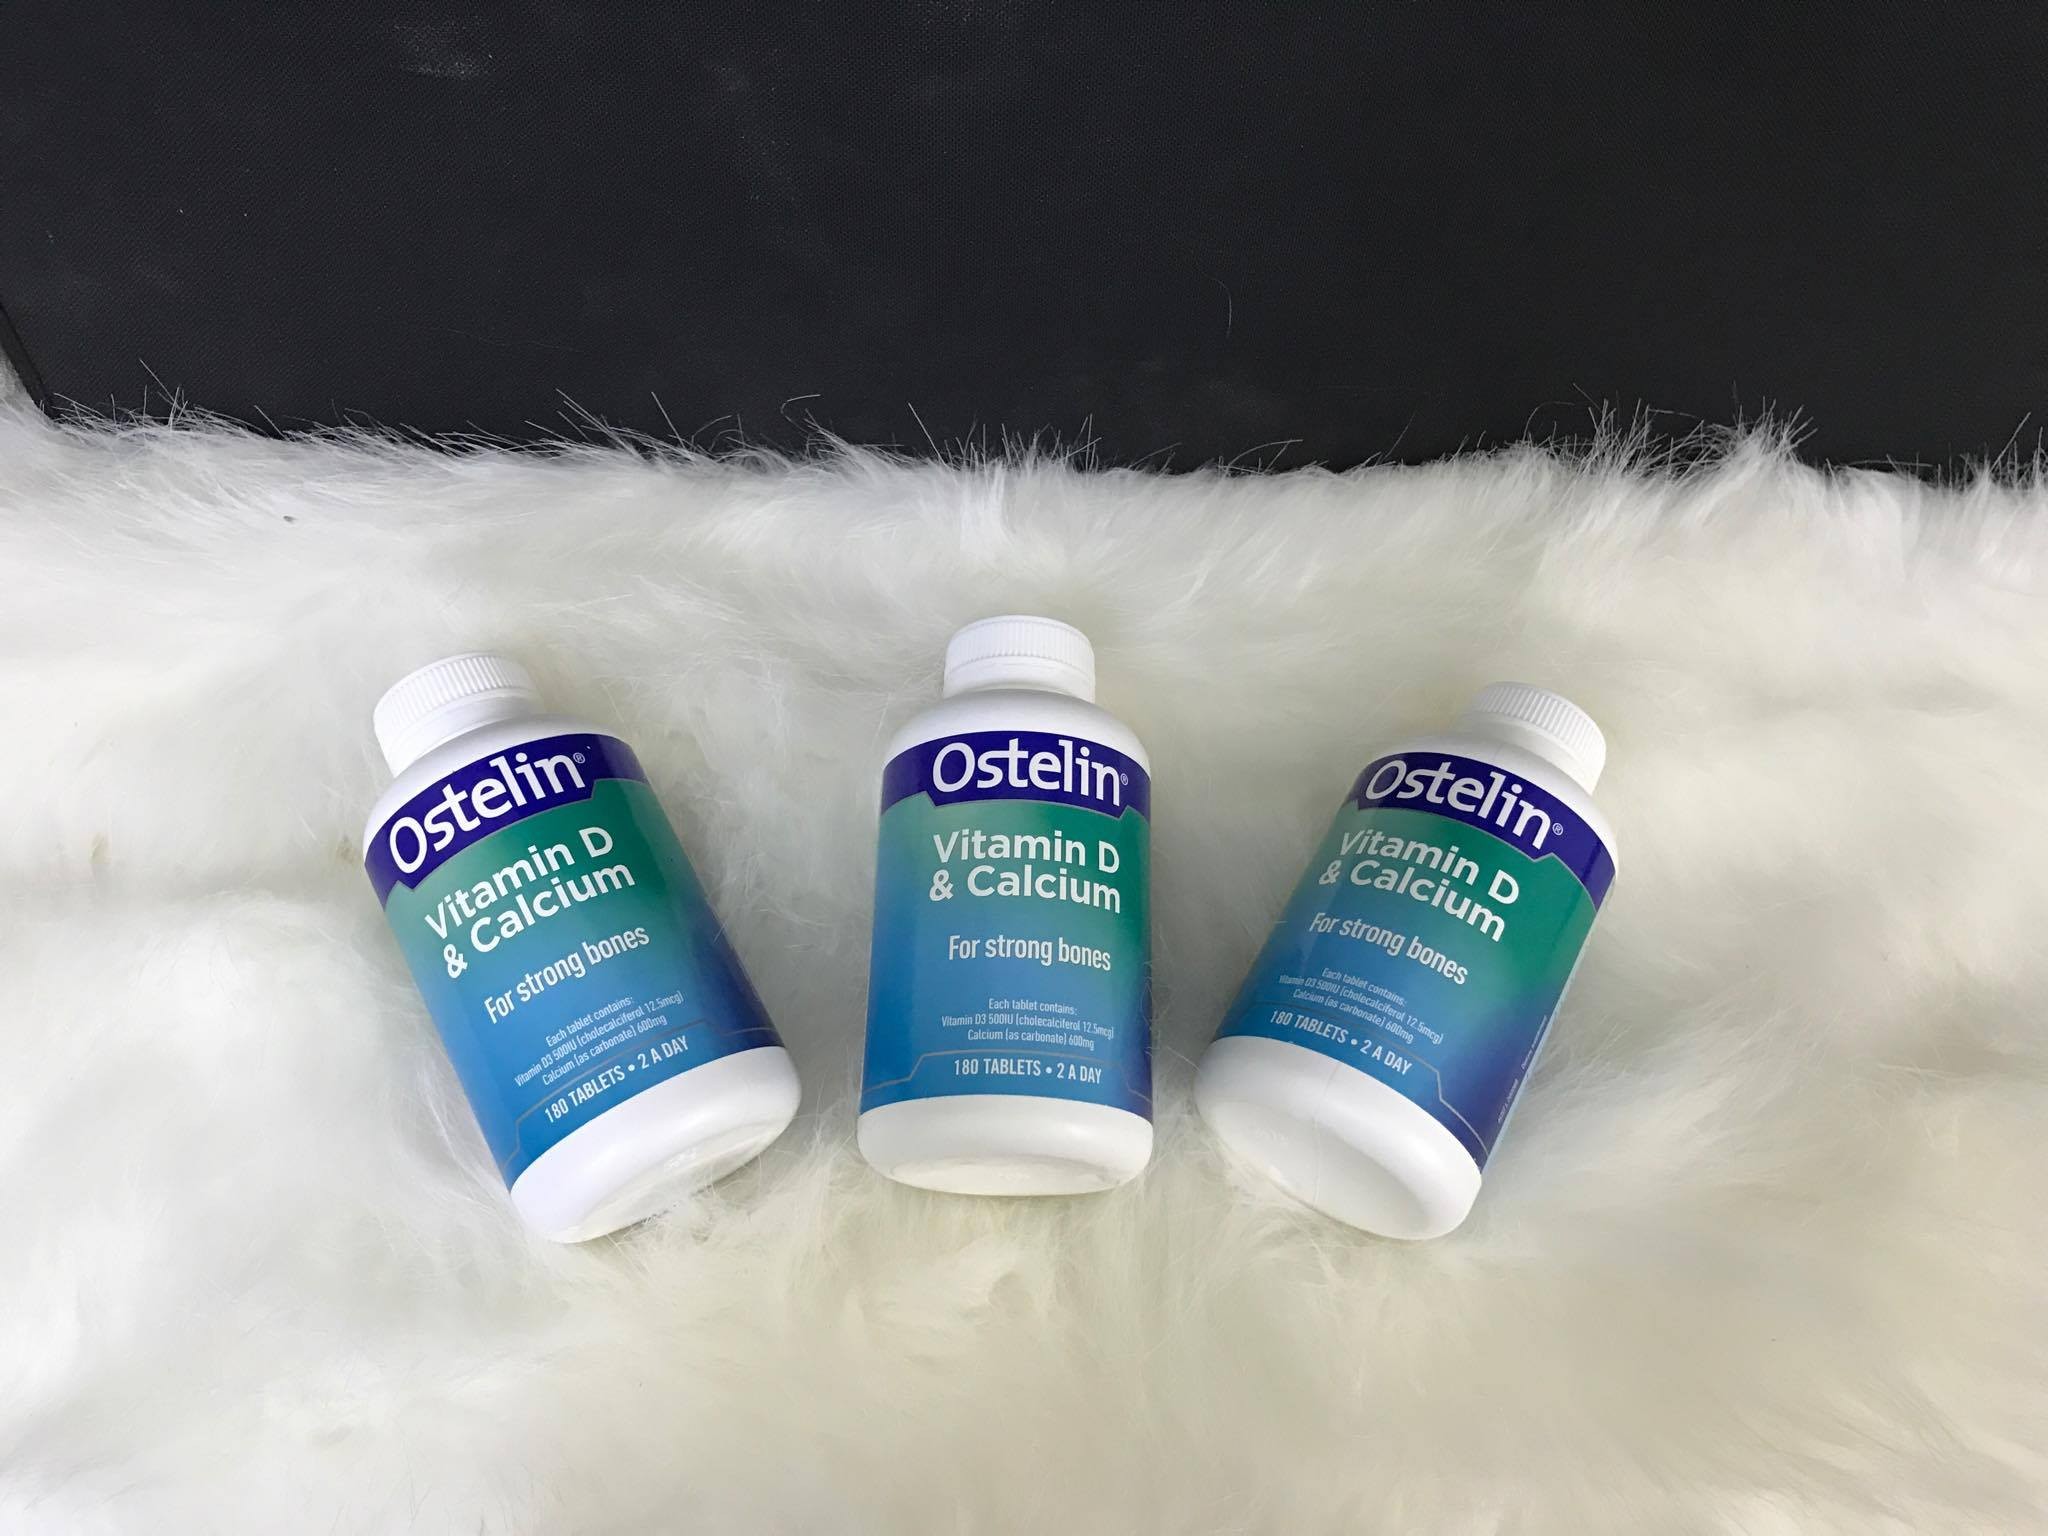 Ostelin là thương hiệu sản xuất thực phẩm chức năng, dược phẩm từ Úc